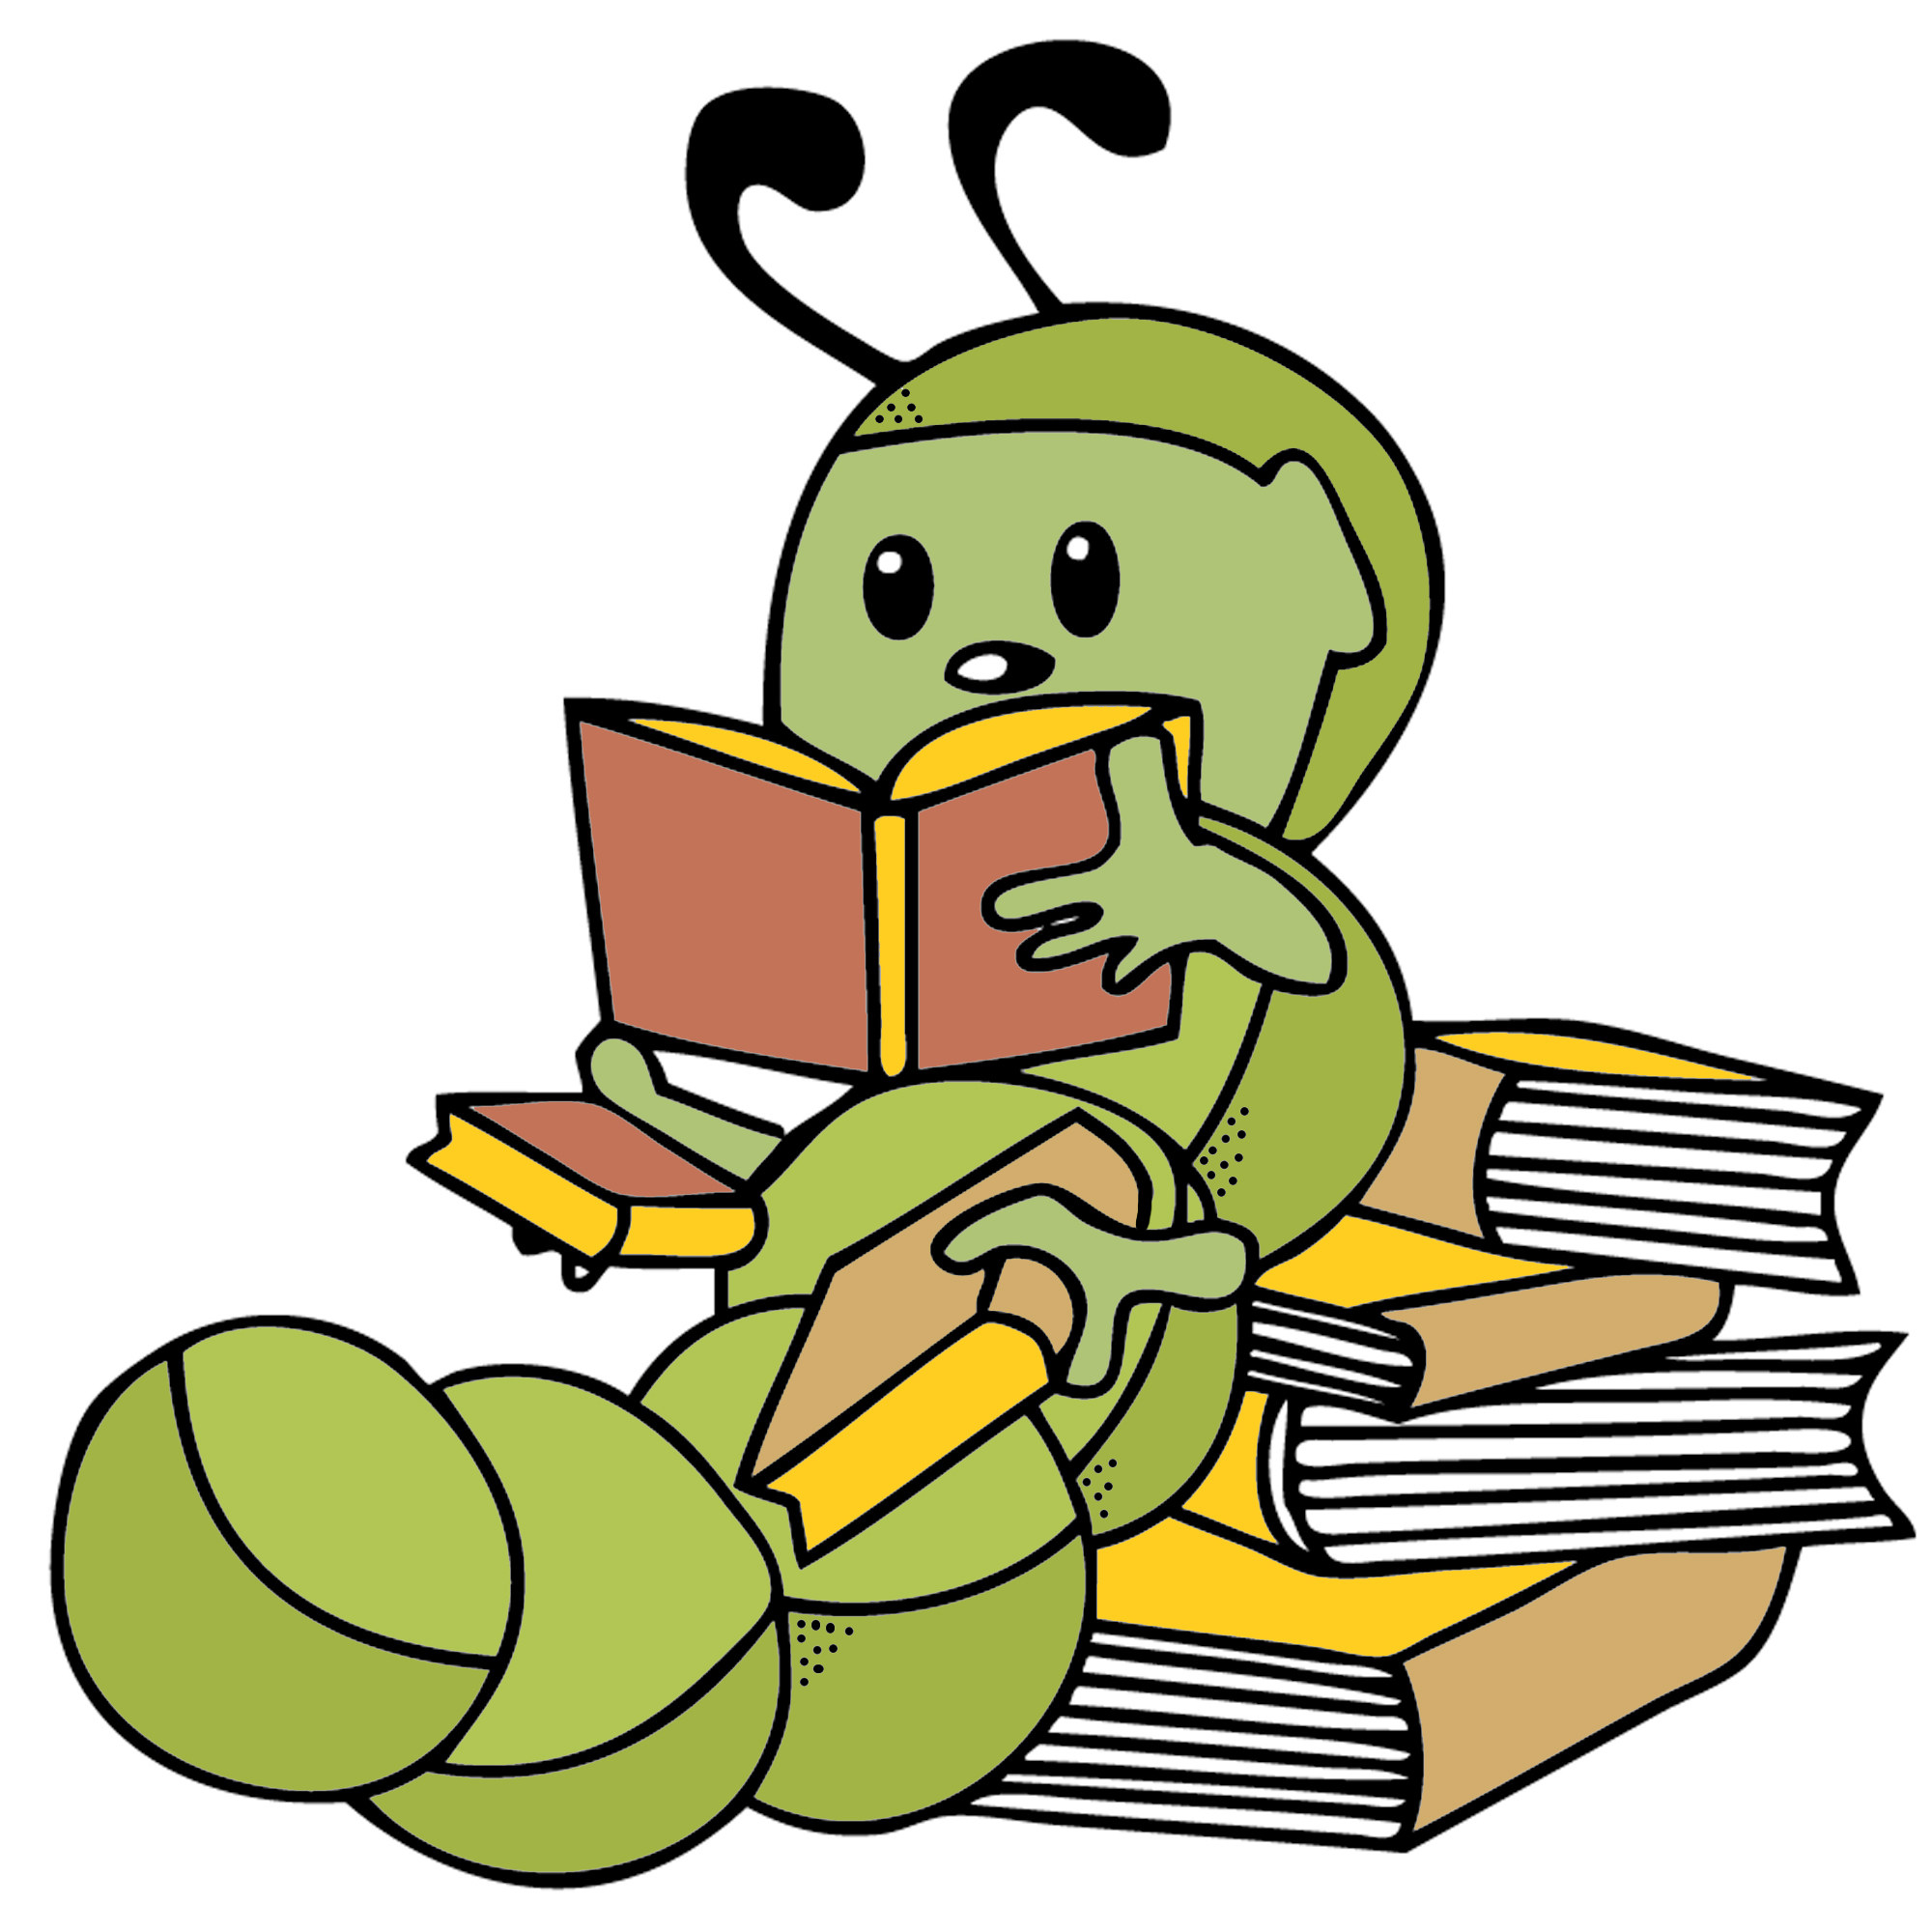 Bookworm clipart cartoon. Free cliparts download clip